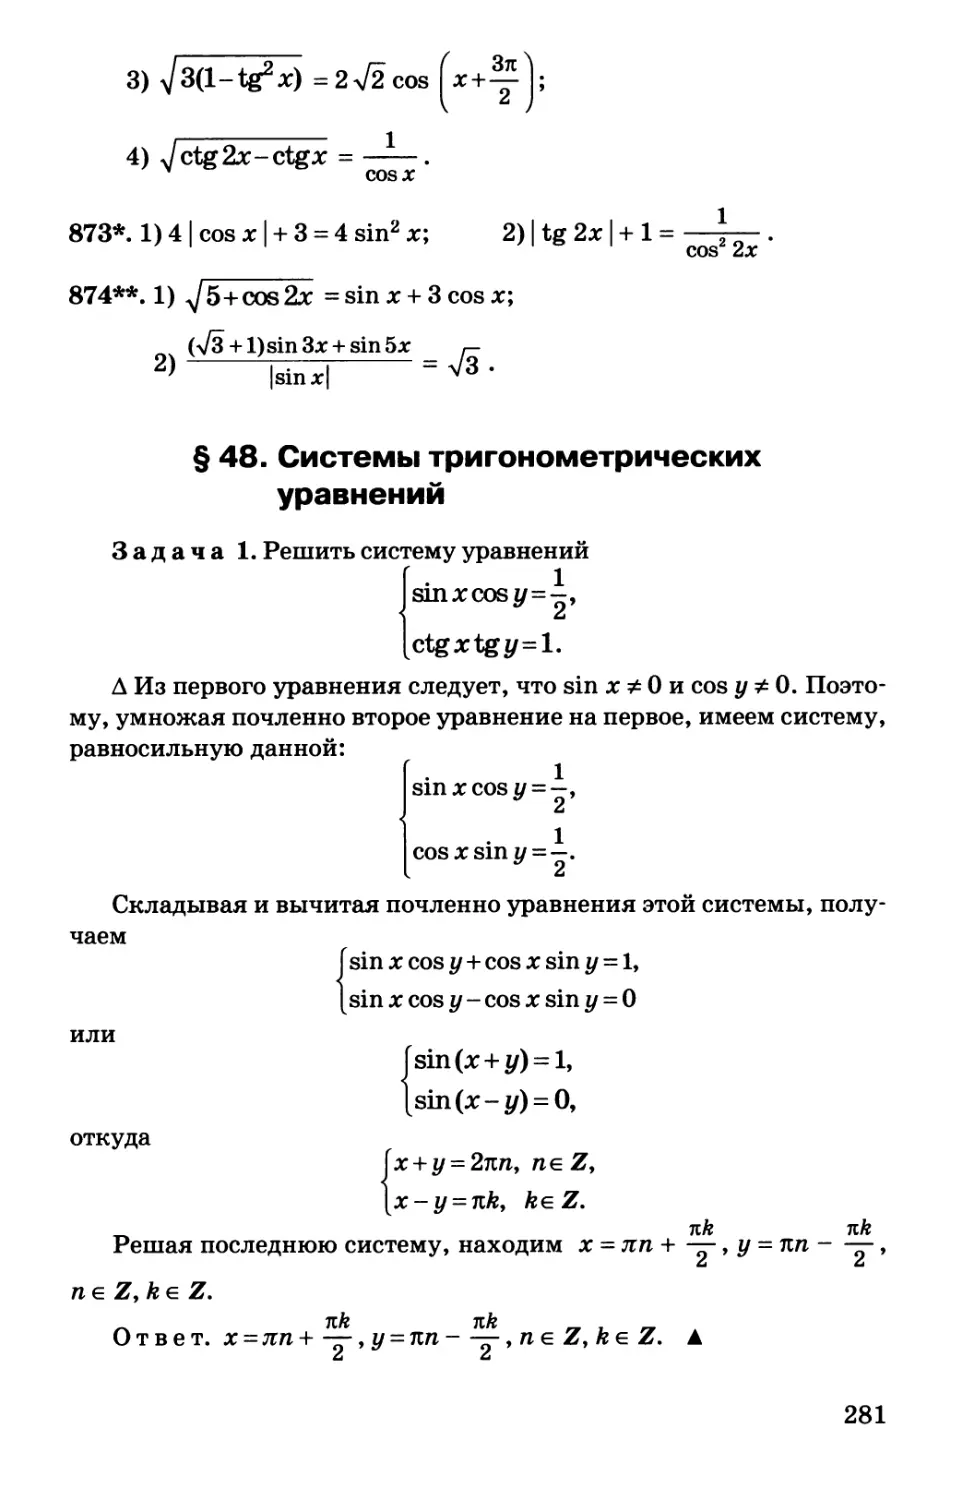 § 48. Системы тригонометрических уравнений